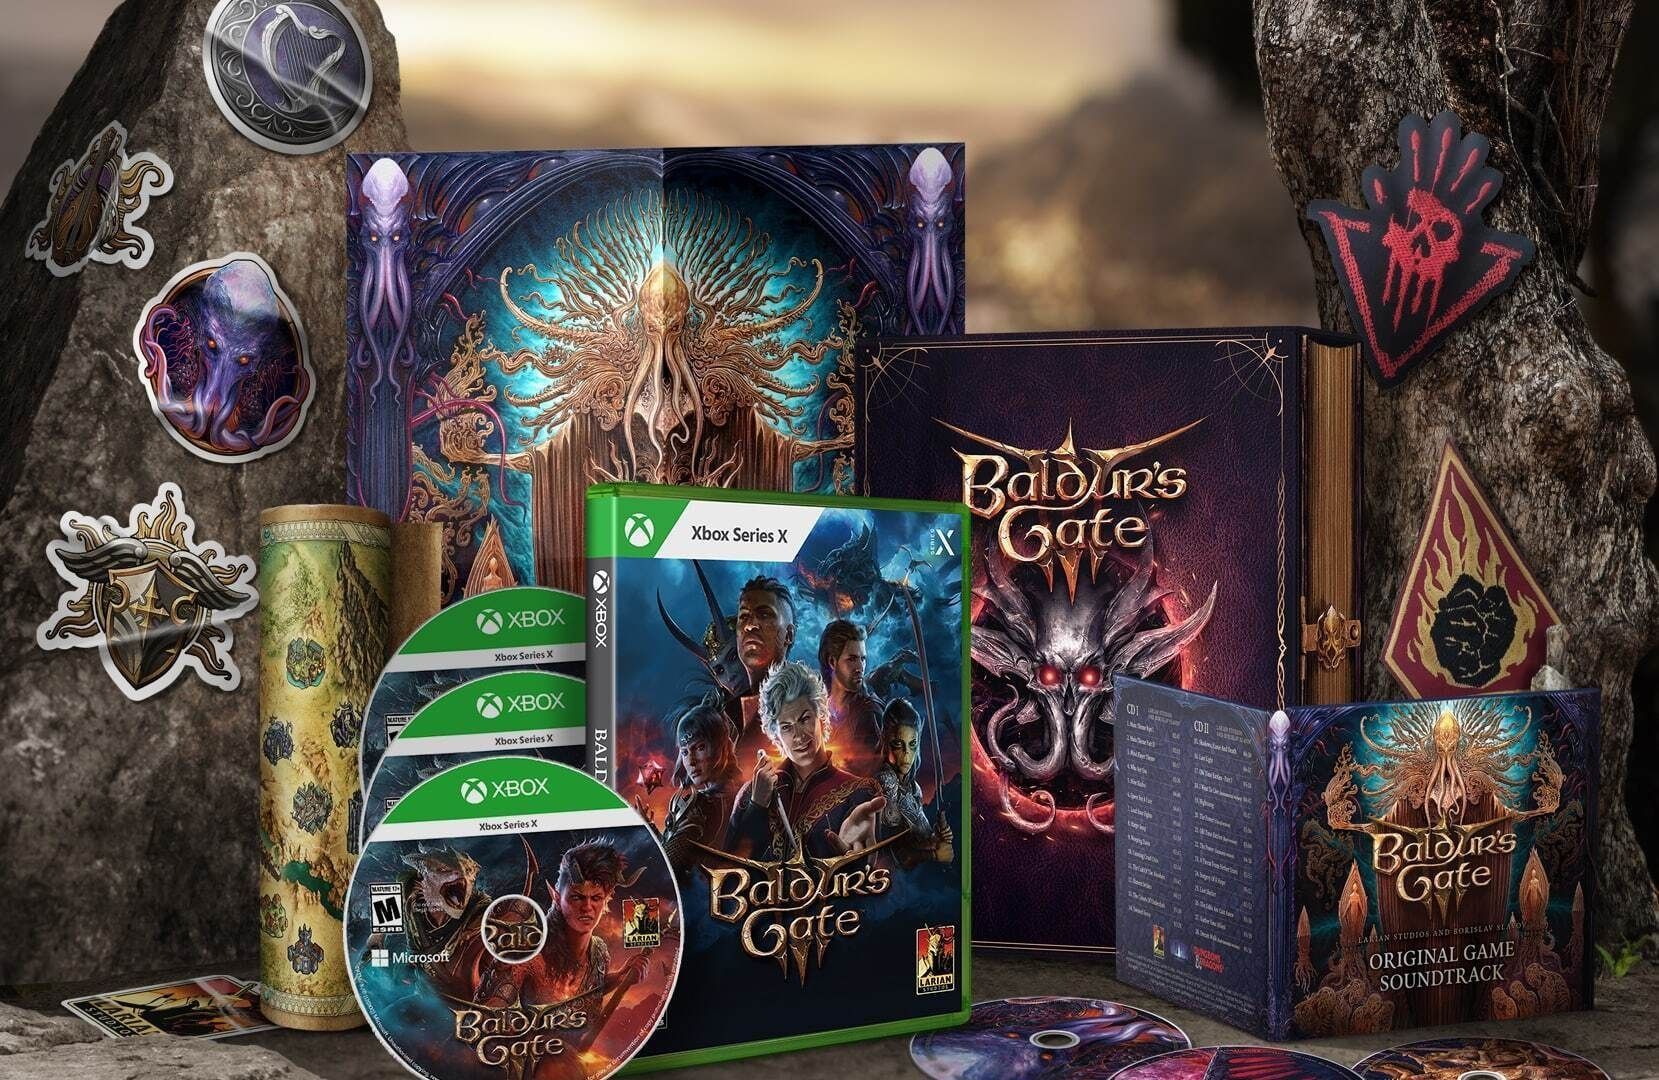 Larian confirme que l'édition physique Deluxe de Baldur's Gate III sur PS5 commencera à être expédiée en Europe la semaine prochaine.